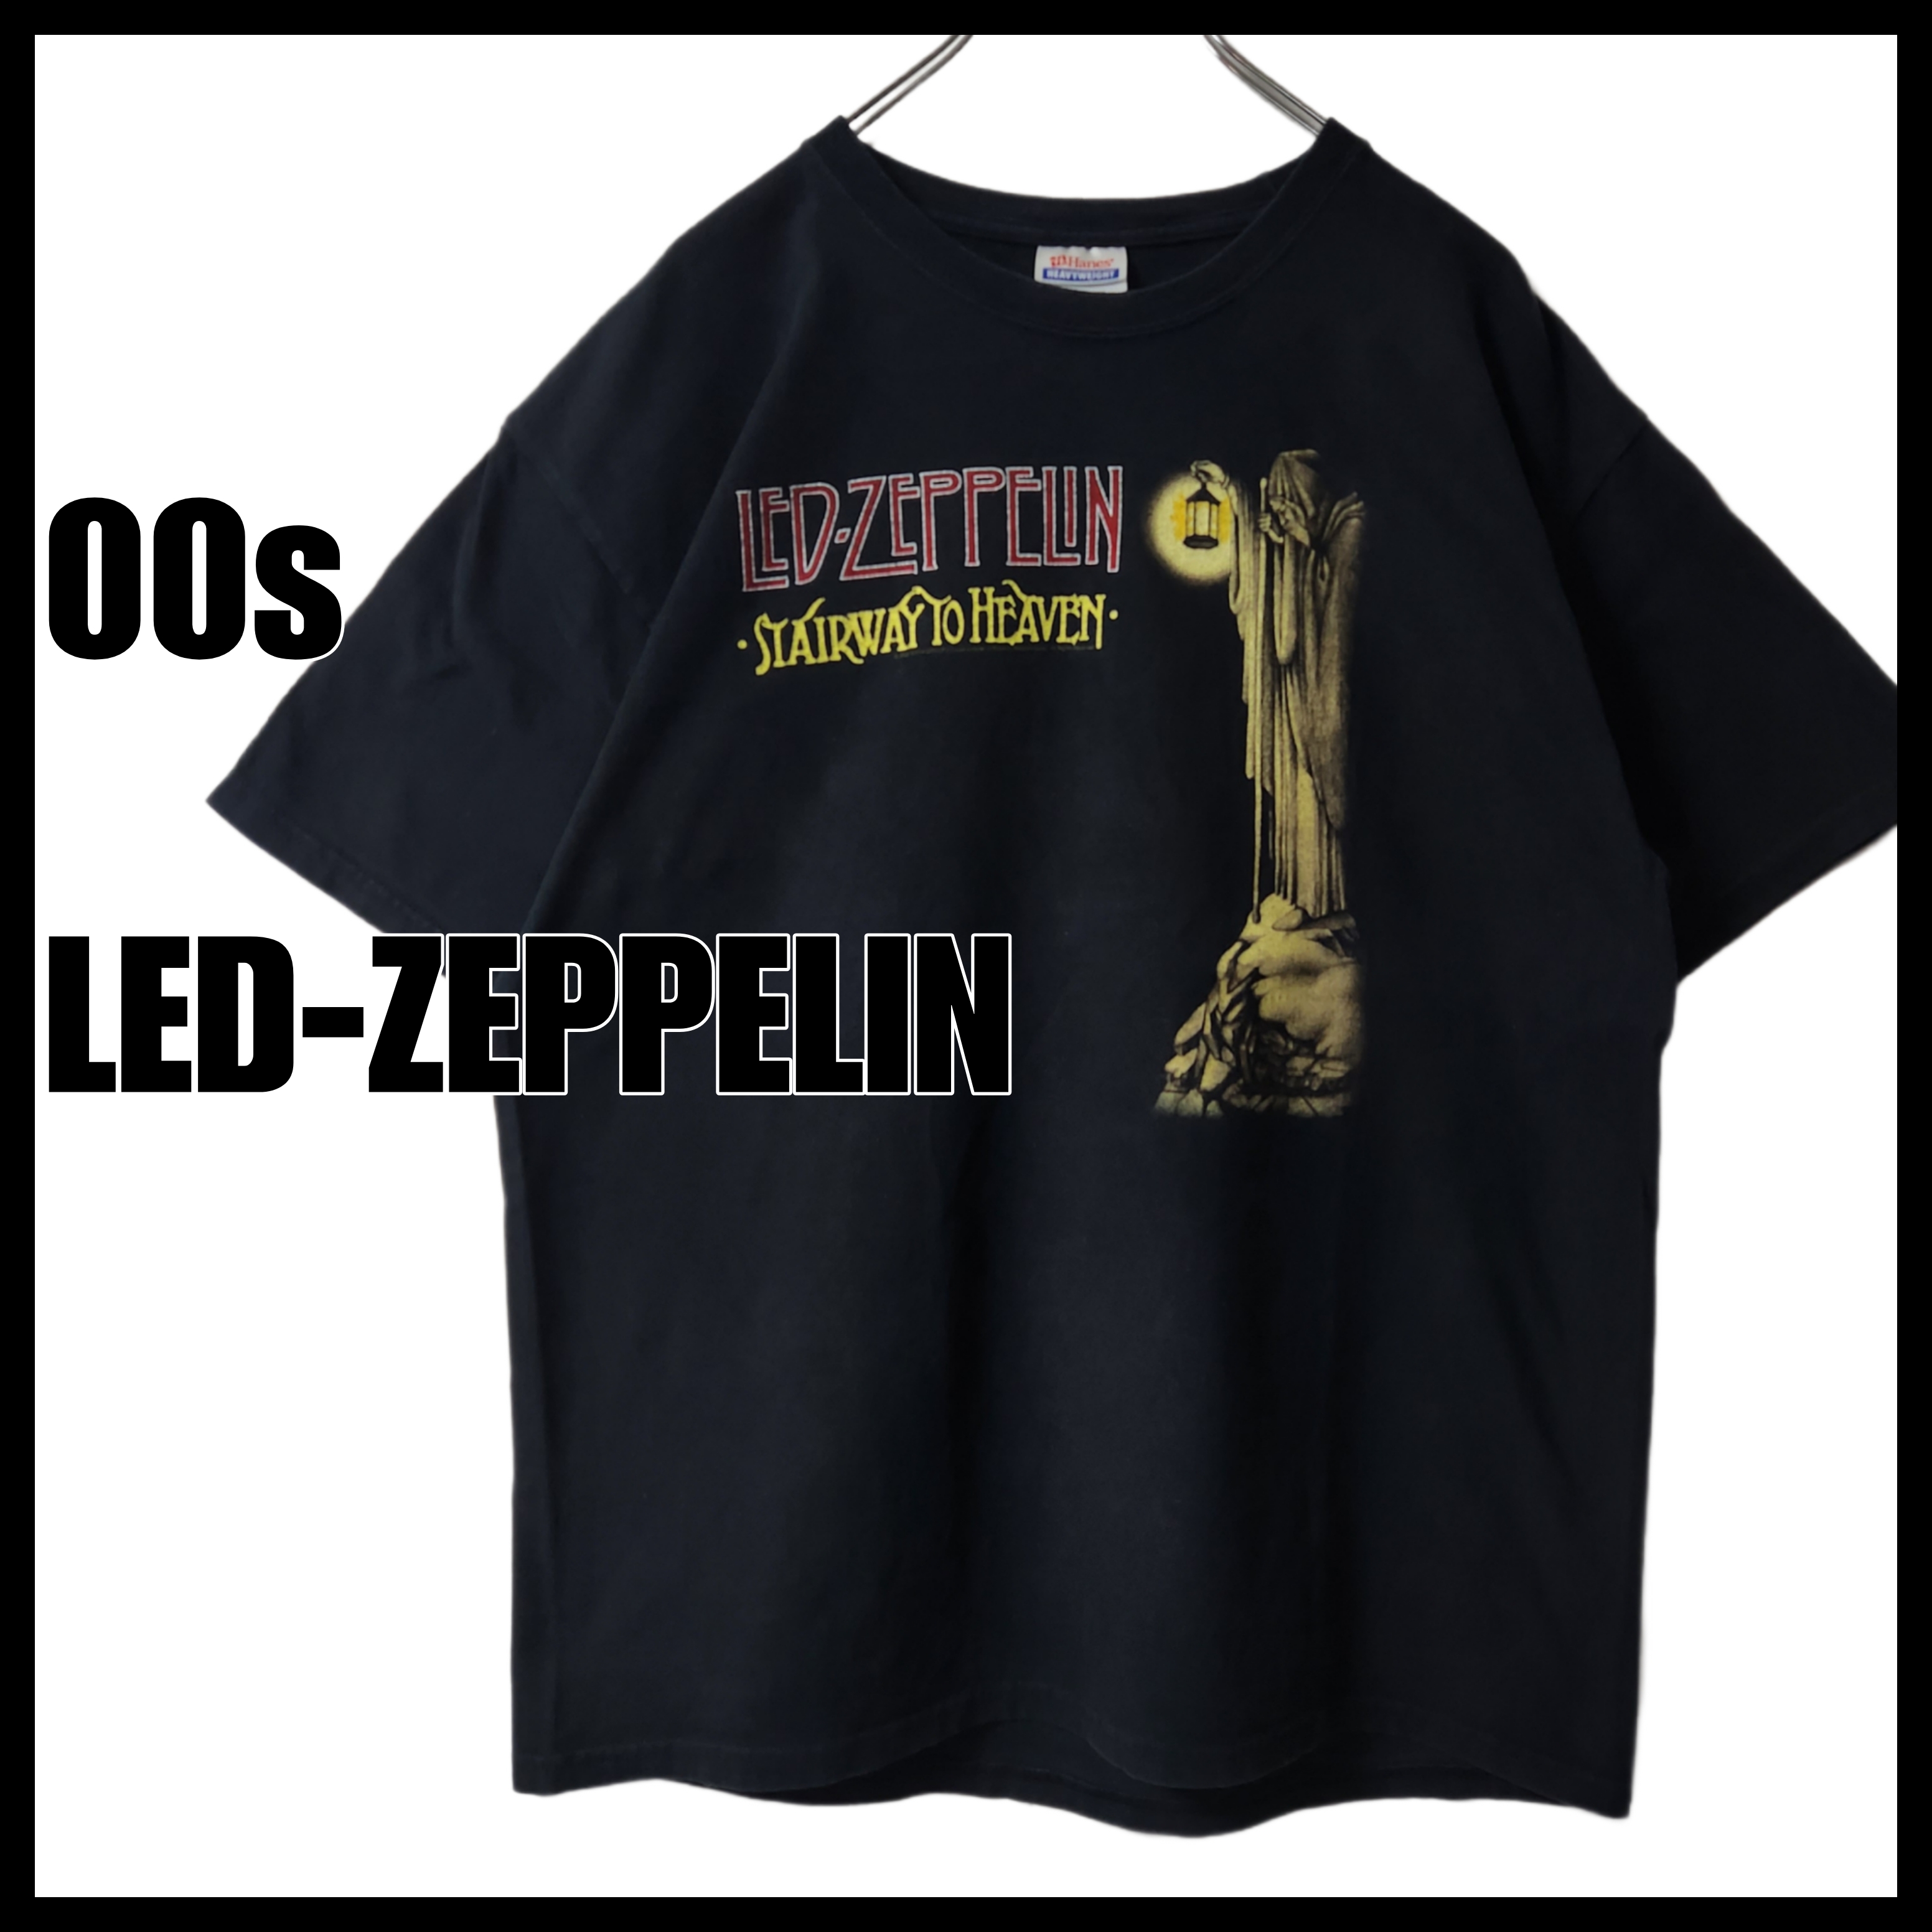 00s 【LED-ZEPPELIN】 レッドツェッペリン バンドTシャツ ロックT 黒